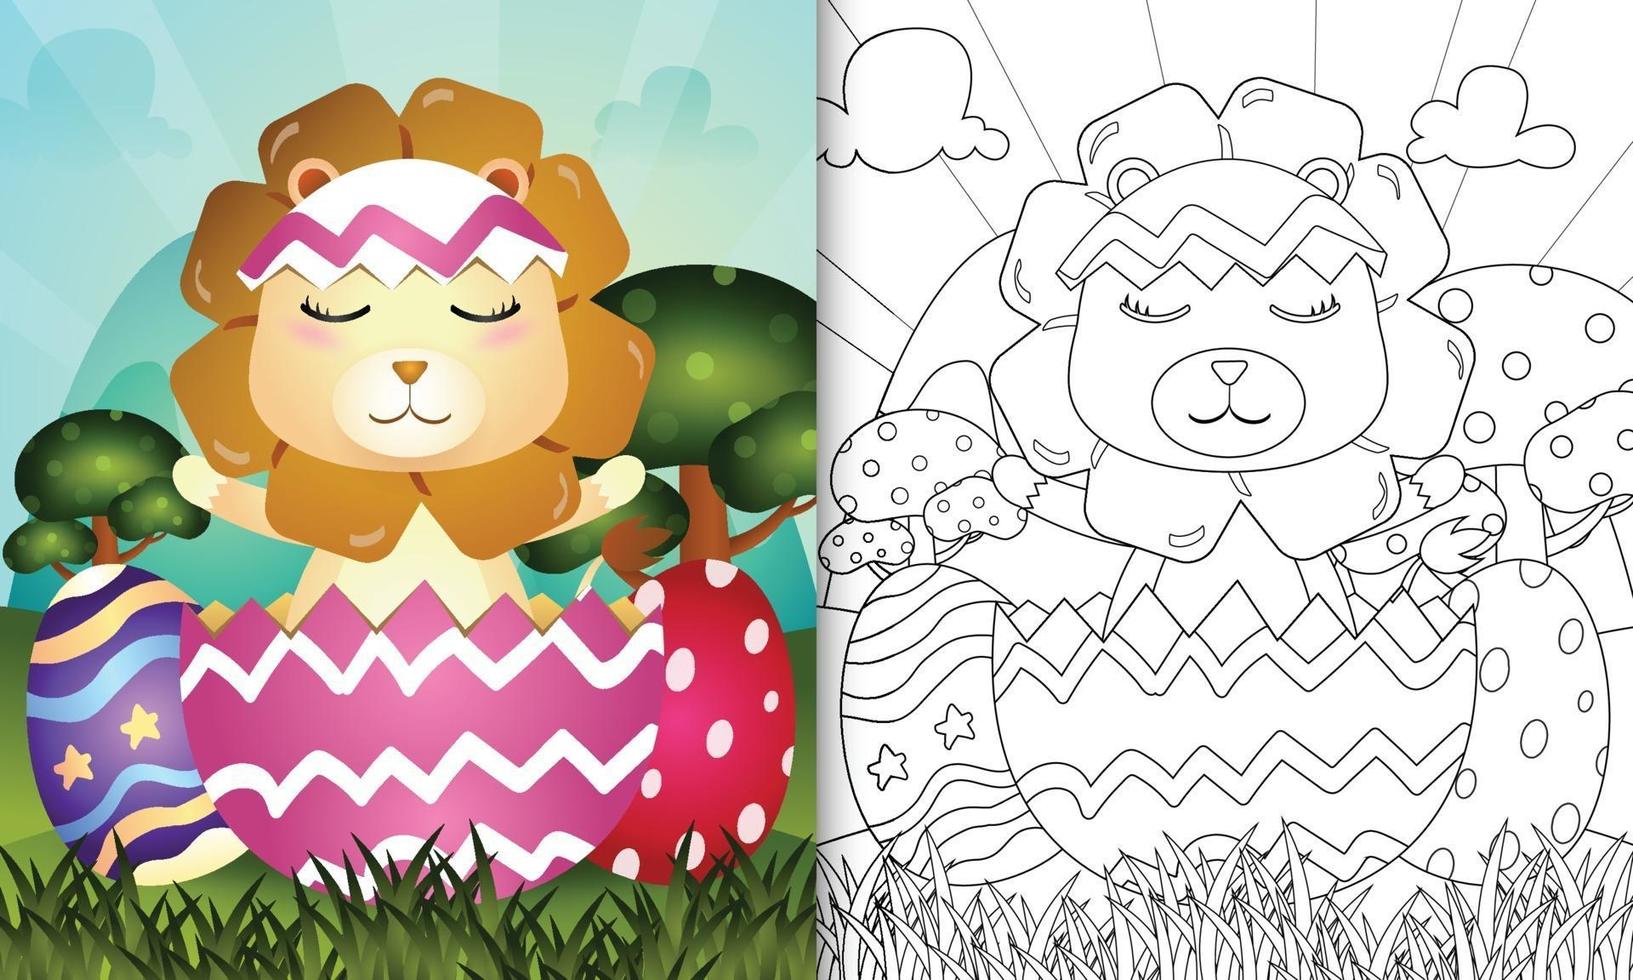 Malbuch für Kinder unter dem Motto "Happy Easter Day" mit Charakterillustration eines niedlichen Löwen im Ei vektor